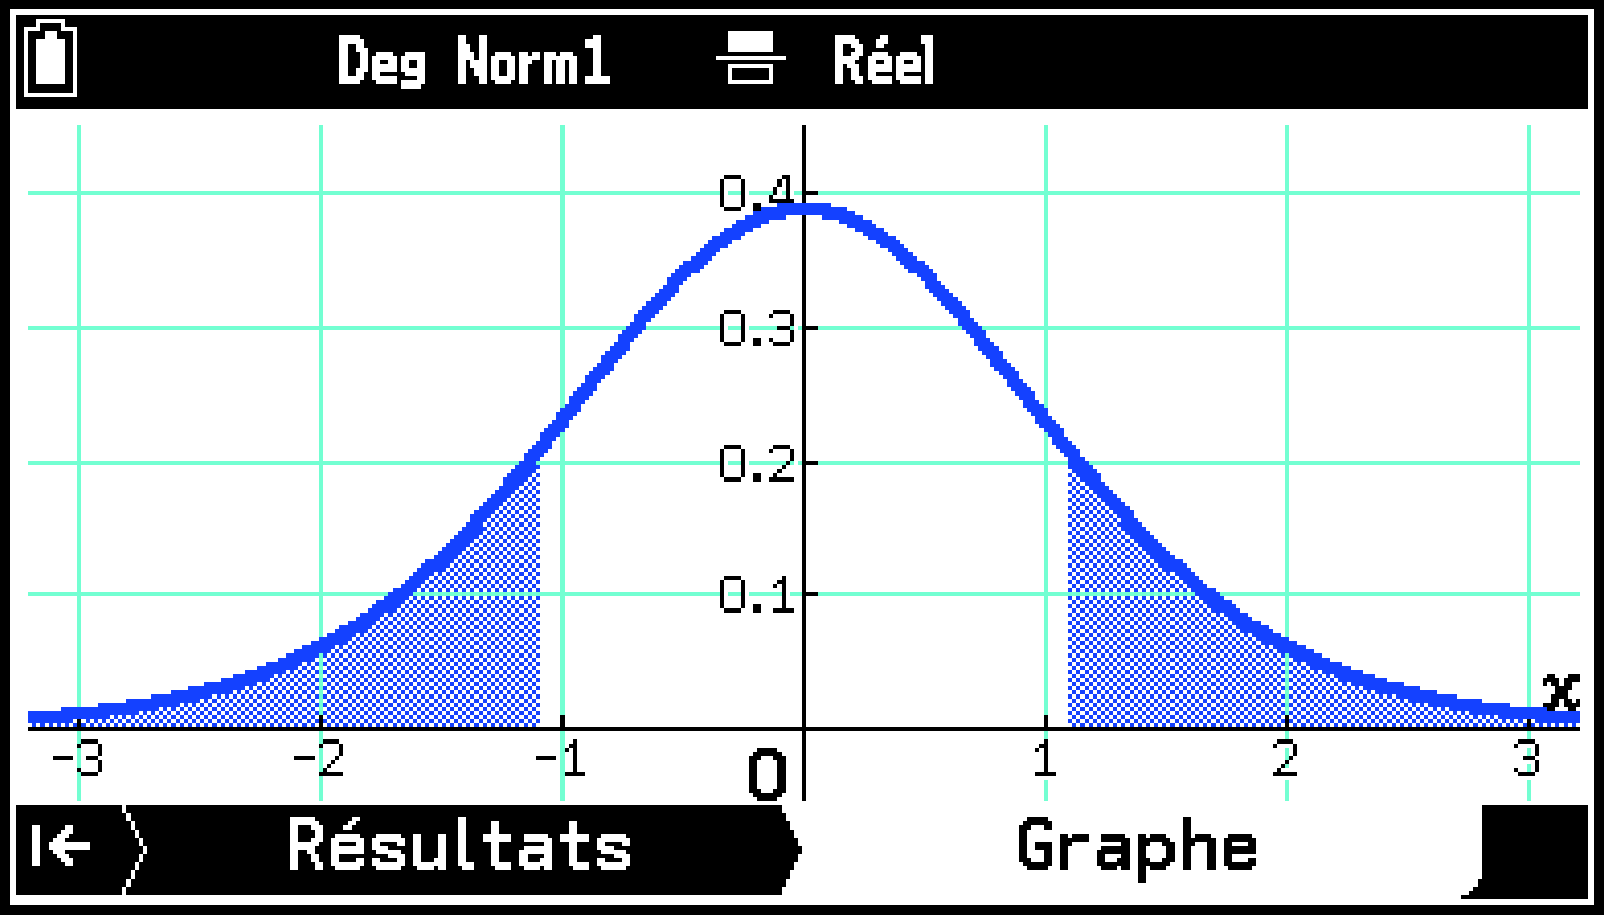 CY875_Statistics_Test Graph Tab_1